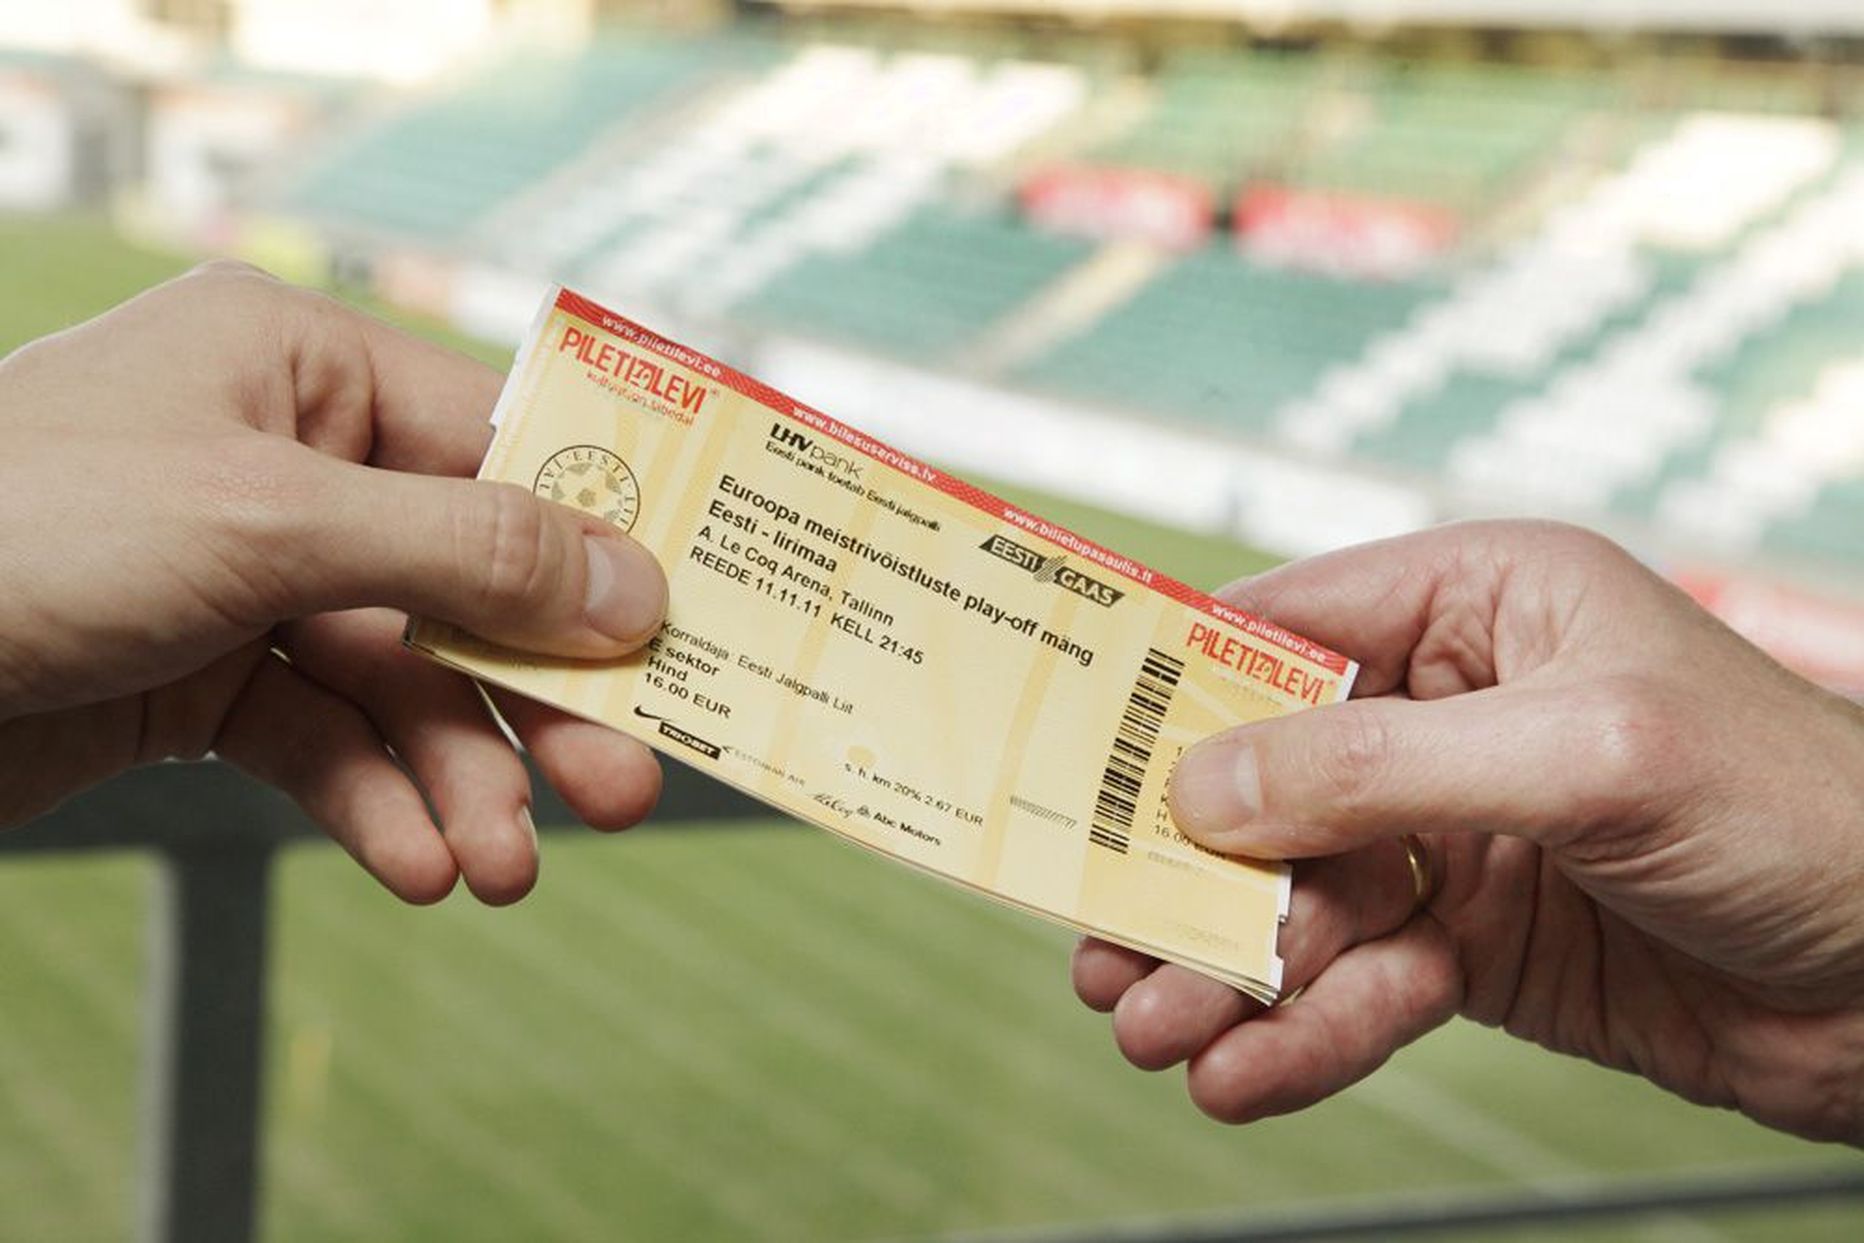 Kuigi Eesti seadused ei keela pileteid vaheltkasuga müüa, on Eesti Jalgpalli Liidul õigus piletite müümisel kehtestada omad reeglid. Mustal turul piletitega hangeldajatega võetakse kiirelt ühendust ja püütakse kokkuleppele jõuda.